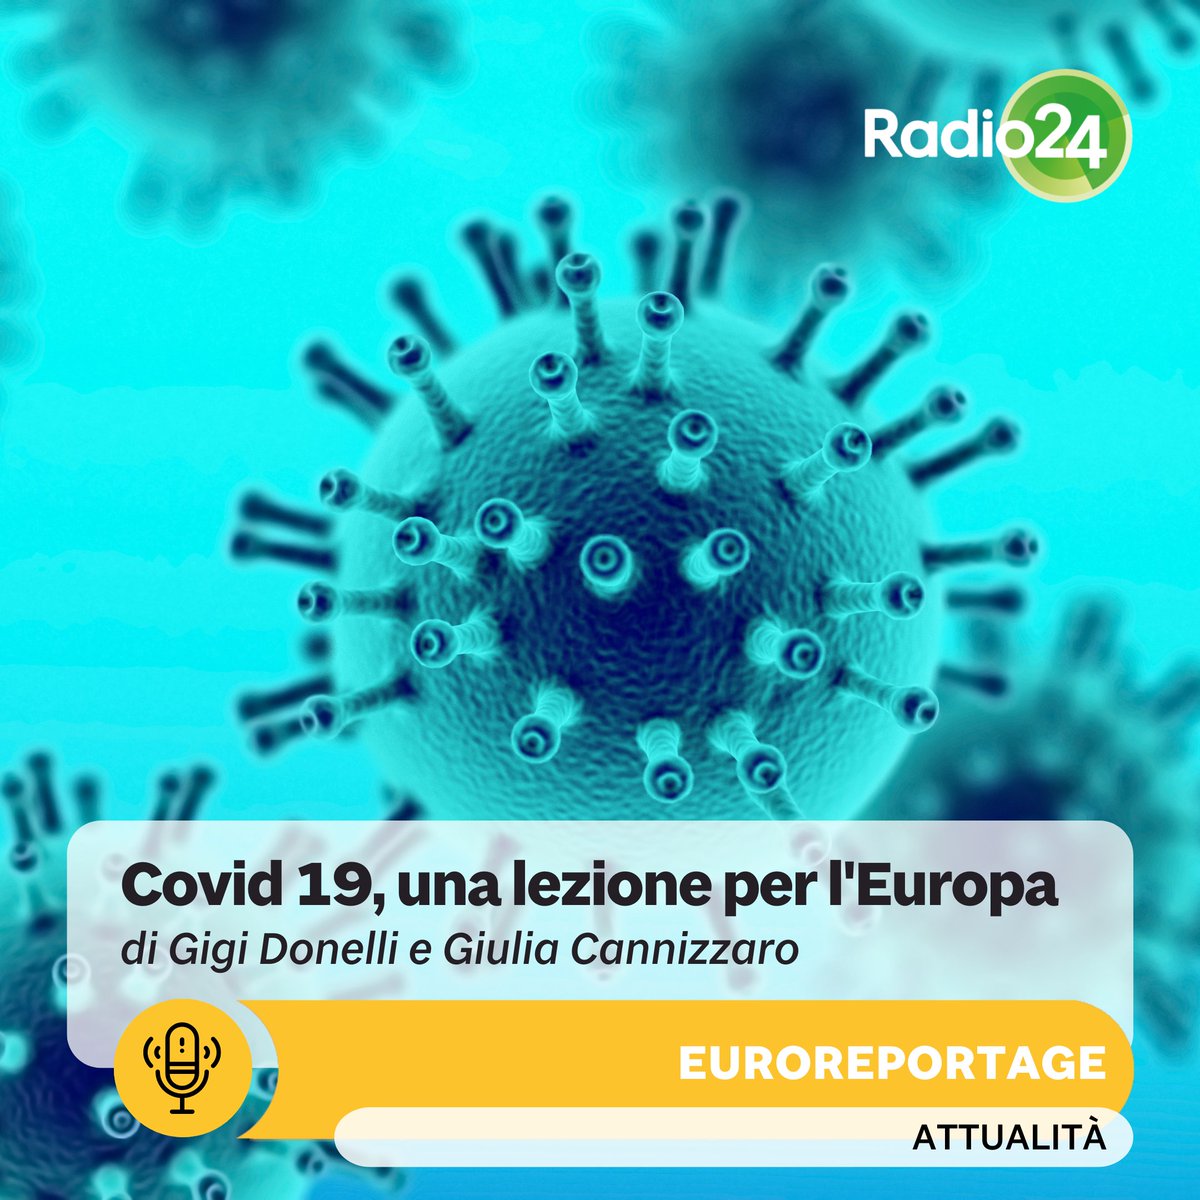 🌍 Il Covid-19 ha avuto un impatto significativo sull'Europa a 27. Scopri di più sull'impatto del Covid-19 sull'Europa nel nuovo Euroreportage de Il Sole 24 Ore: tinyurl.com/2vvn7sak #Covid19 #Europa #Salute #UnioneEuropea #Euroreportage #Radio24